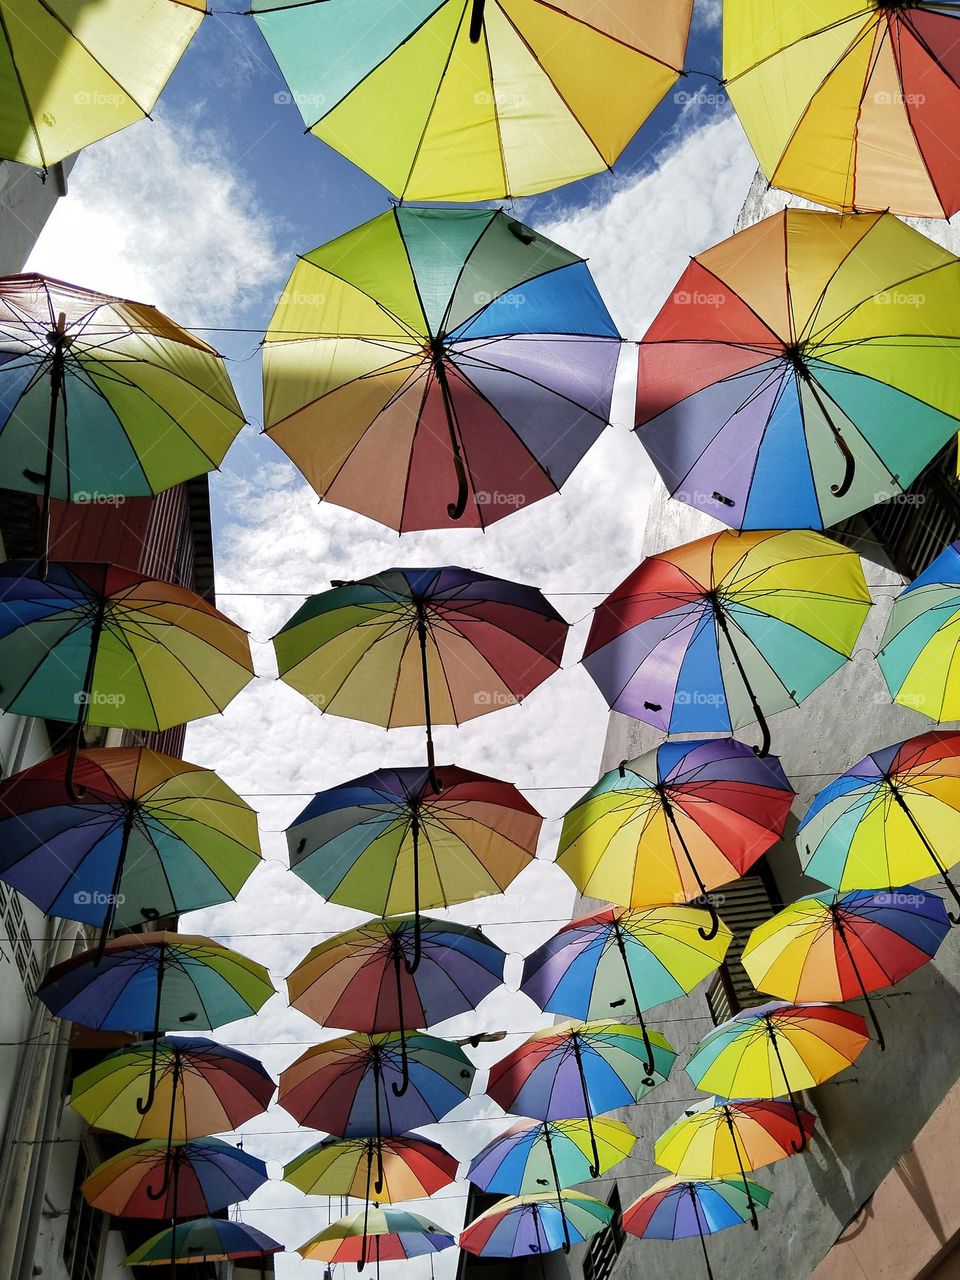 Decoration umbrellas.